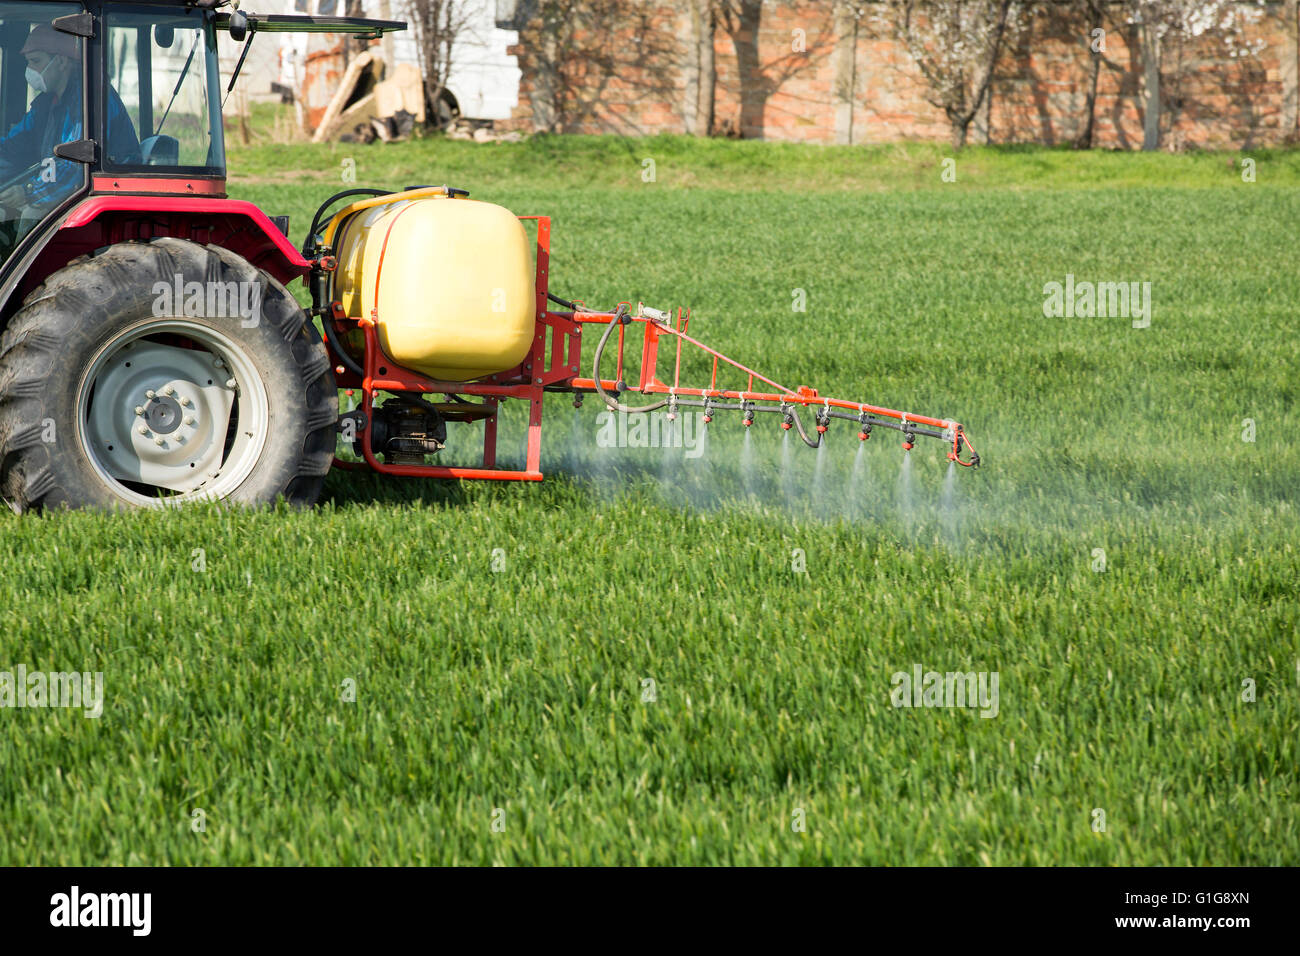 Spritzen Getreide Weizenfeld mit Traktor und sprayer Stockfotografie - Alamy